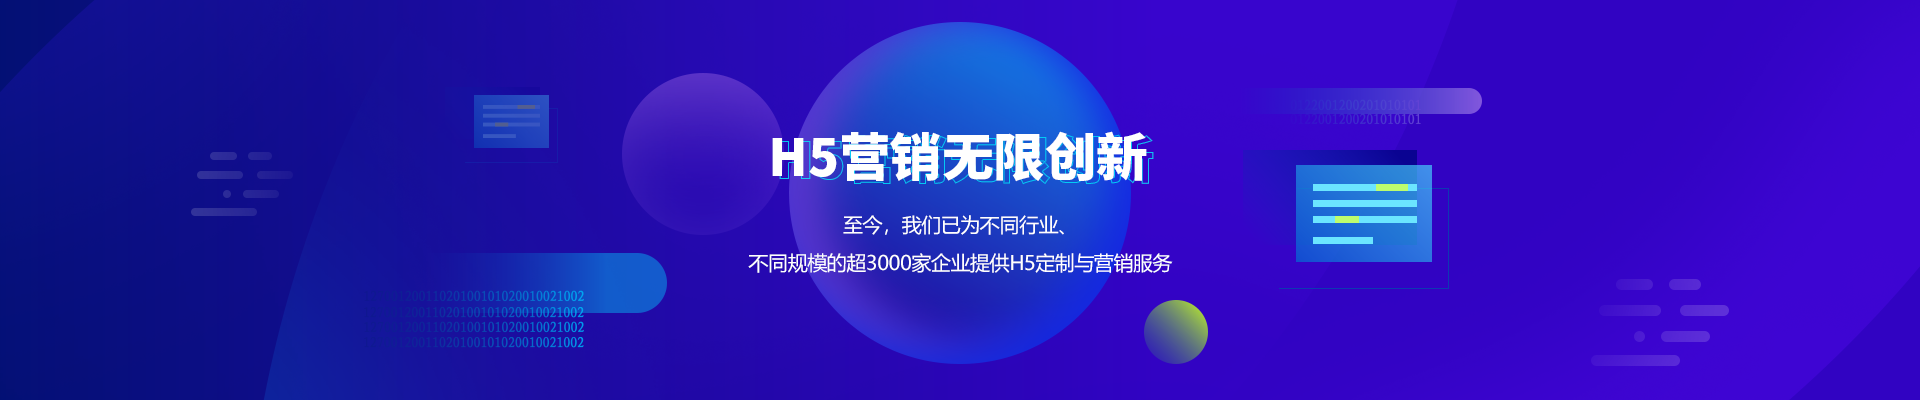 上海H5制作